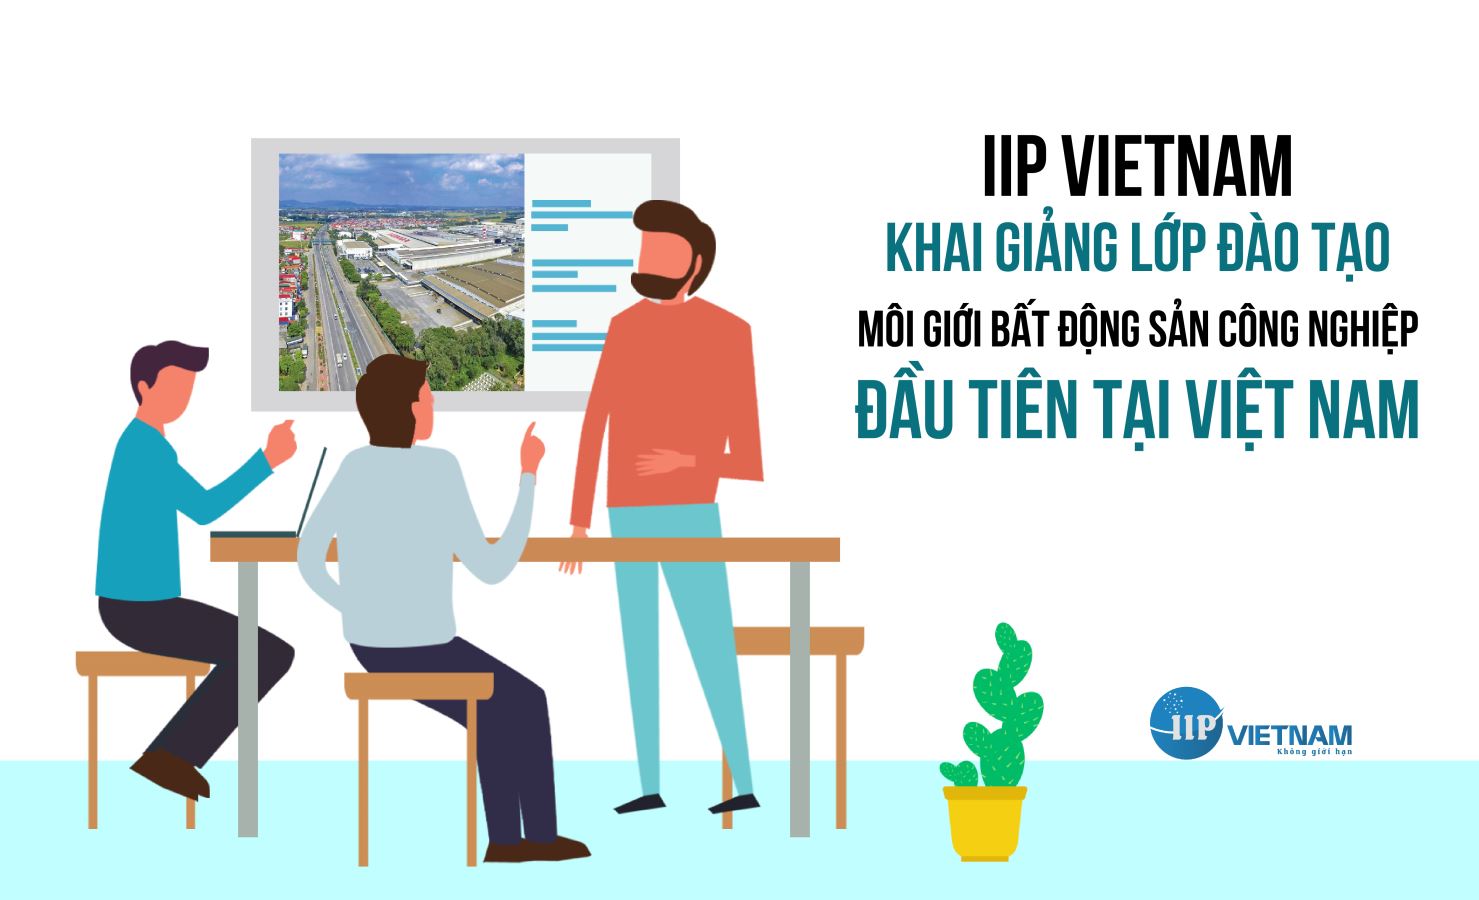 IIP VIETNAM khai giảng lớp đào tạo bất động sản công nghiệp Việt Nam